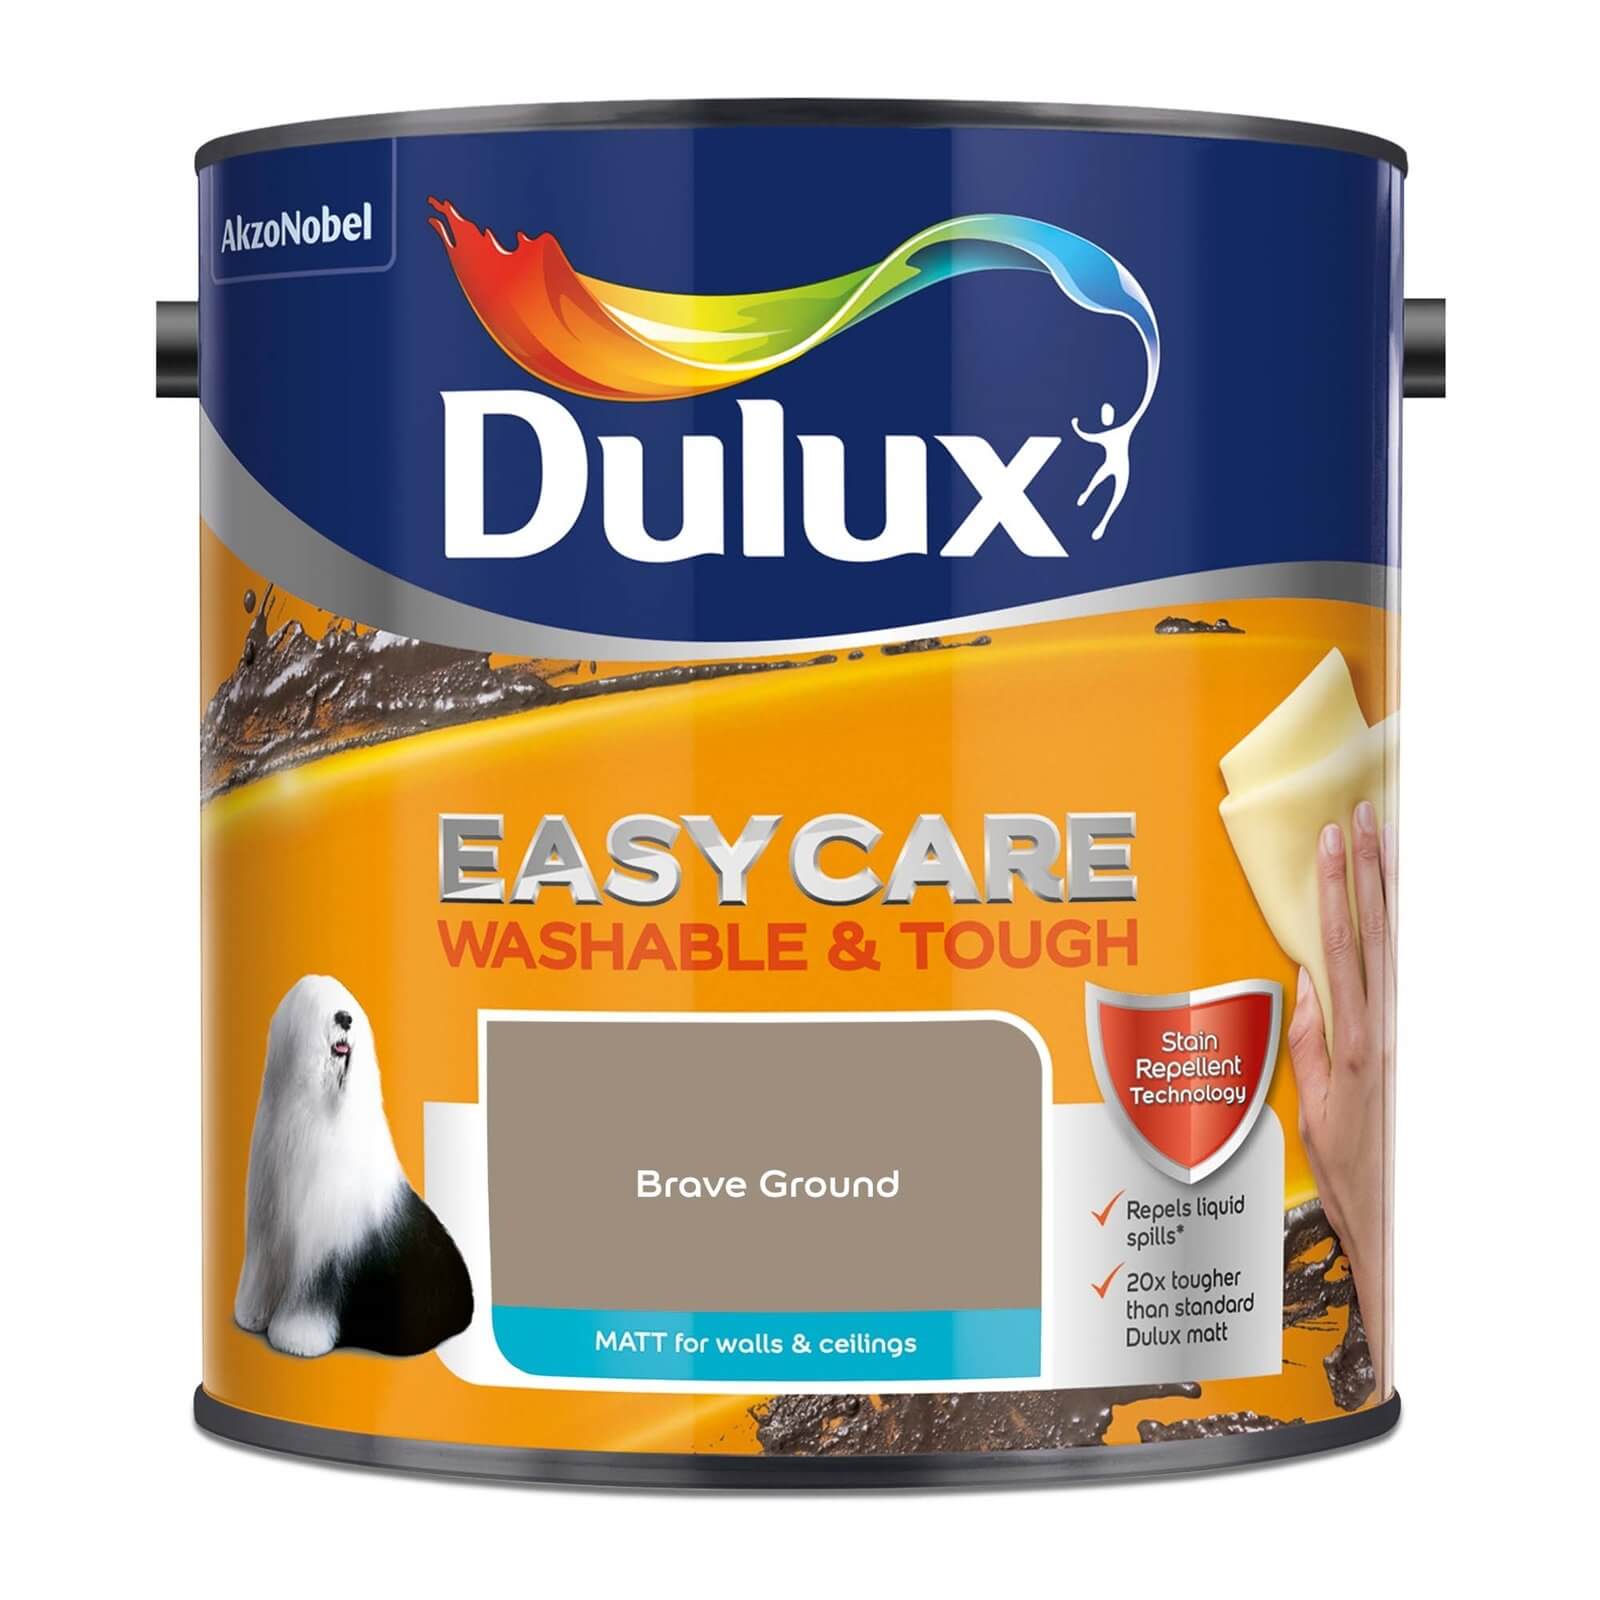 Dulux Easycare Washable & Tough Brave Ground Matt Paint - 2.5L